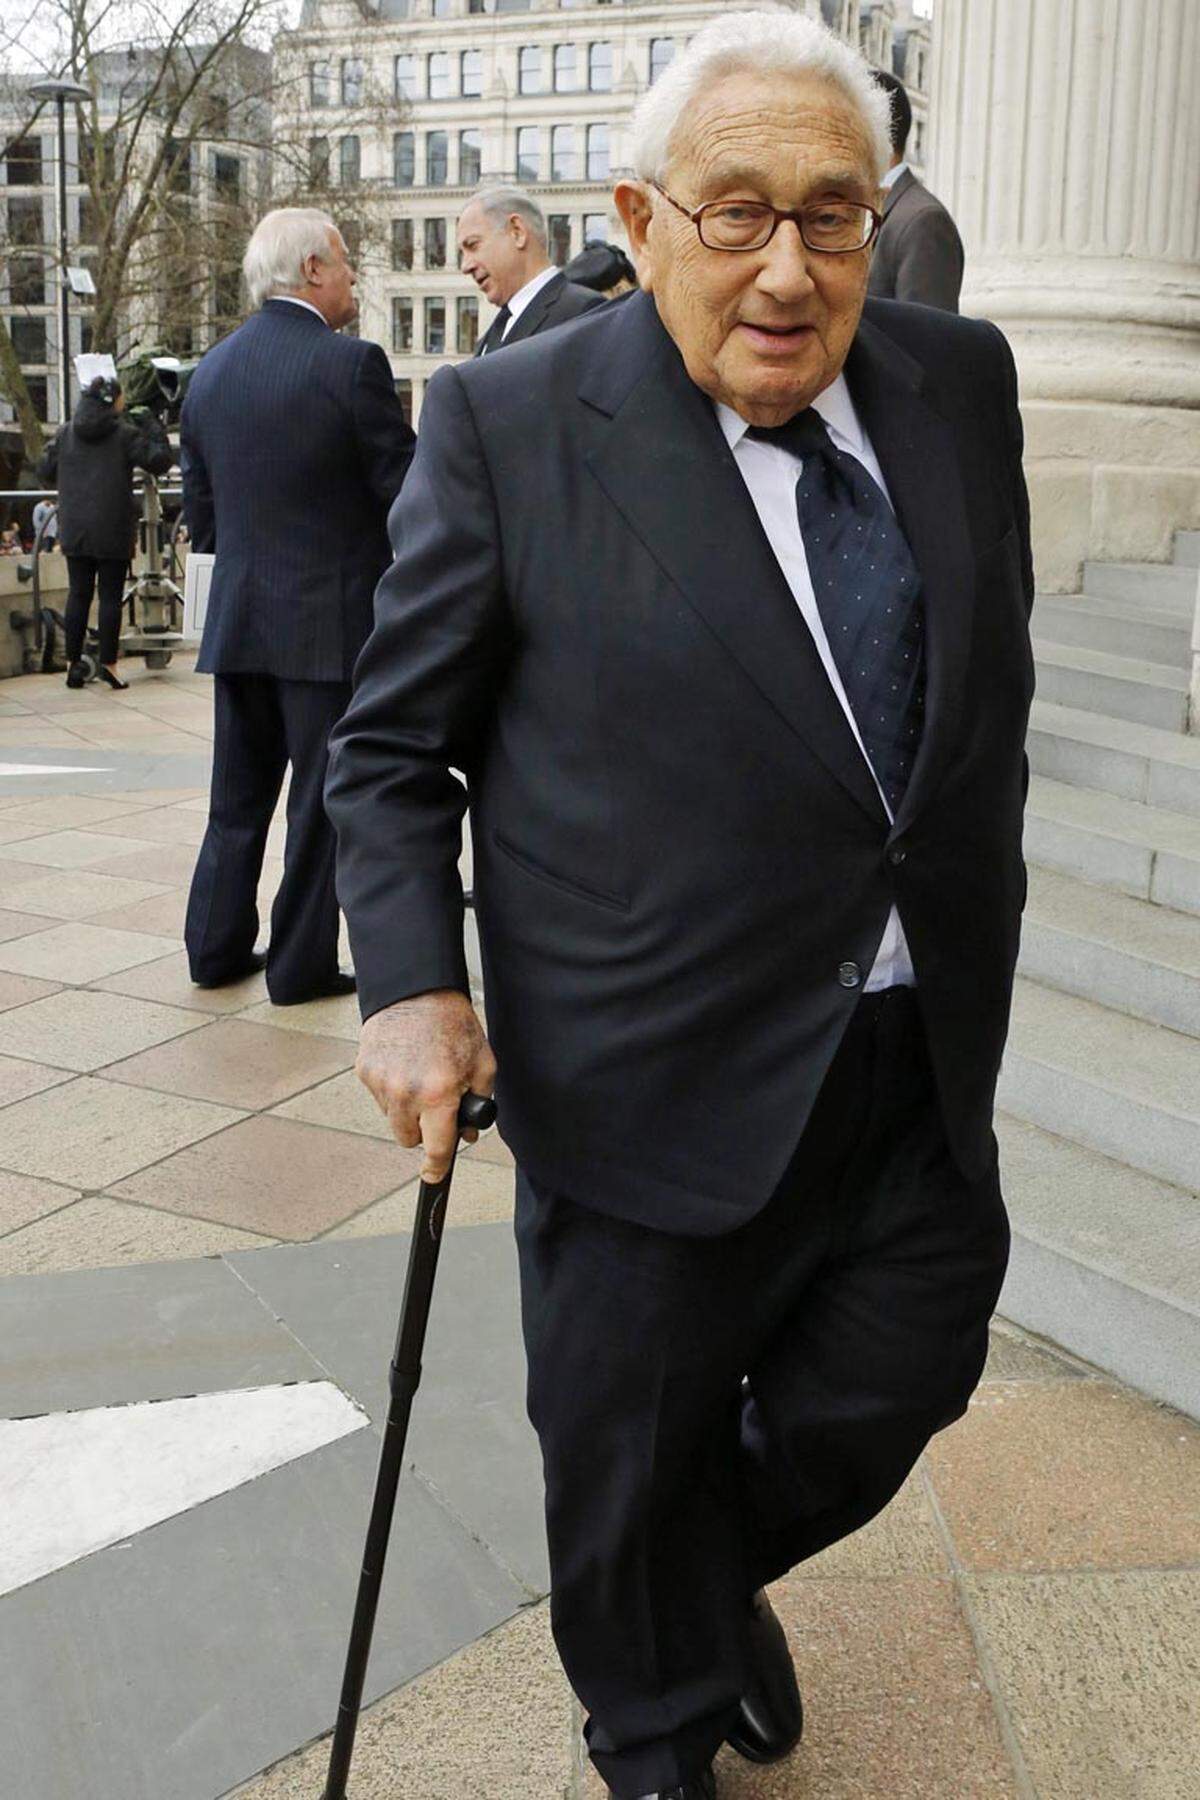 Henry Kissinger machte zu seiner Zeit als mächtigster Außenminister der Welt nicht nur mit Taten, sondern auch mit Worten auf sich aufmerksam. So bezeichnete er die Globalisierung als "nur ein anderes Wort für US-Herrschaft", nannte Macht "das stärkste Aphrodisiakum" und fragte: "Welche Telefonnummer hat Europa eigentlich?" Ein Blick auf den Werdegang des Geheimdiplomaten, Politstars und Nobelpreisträgers. 